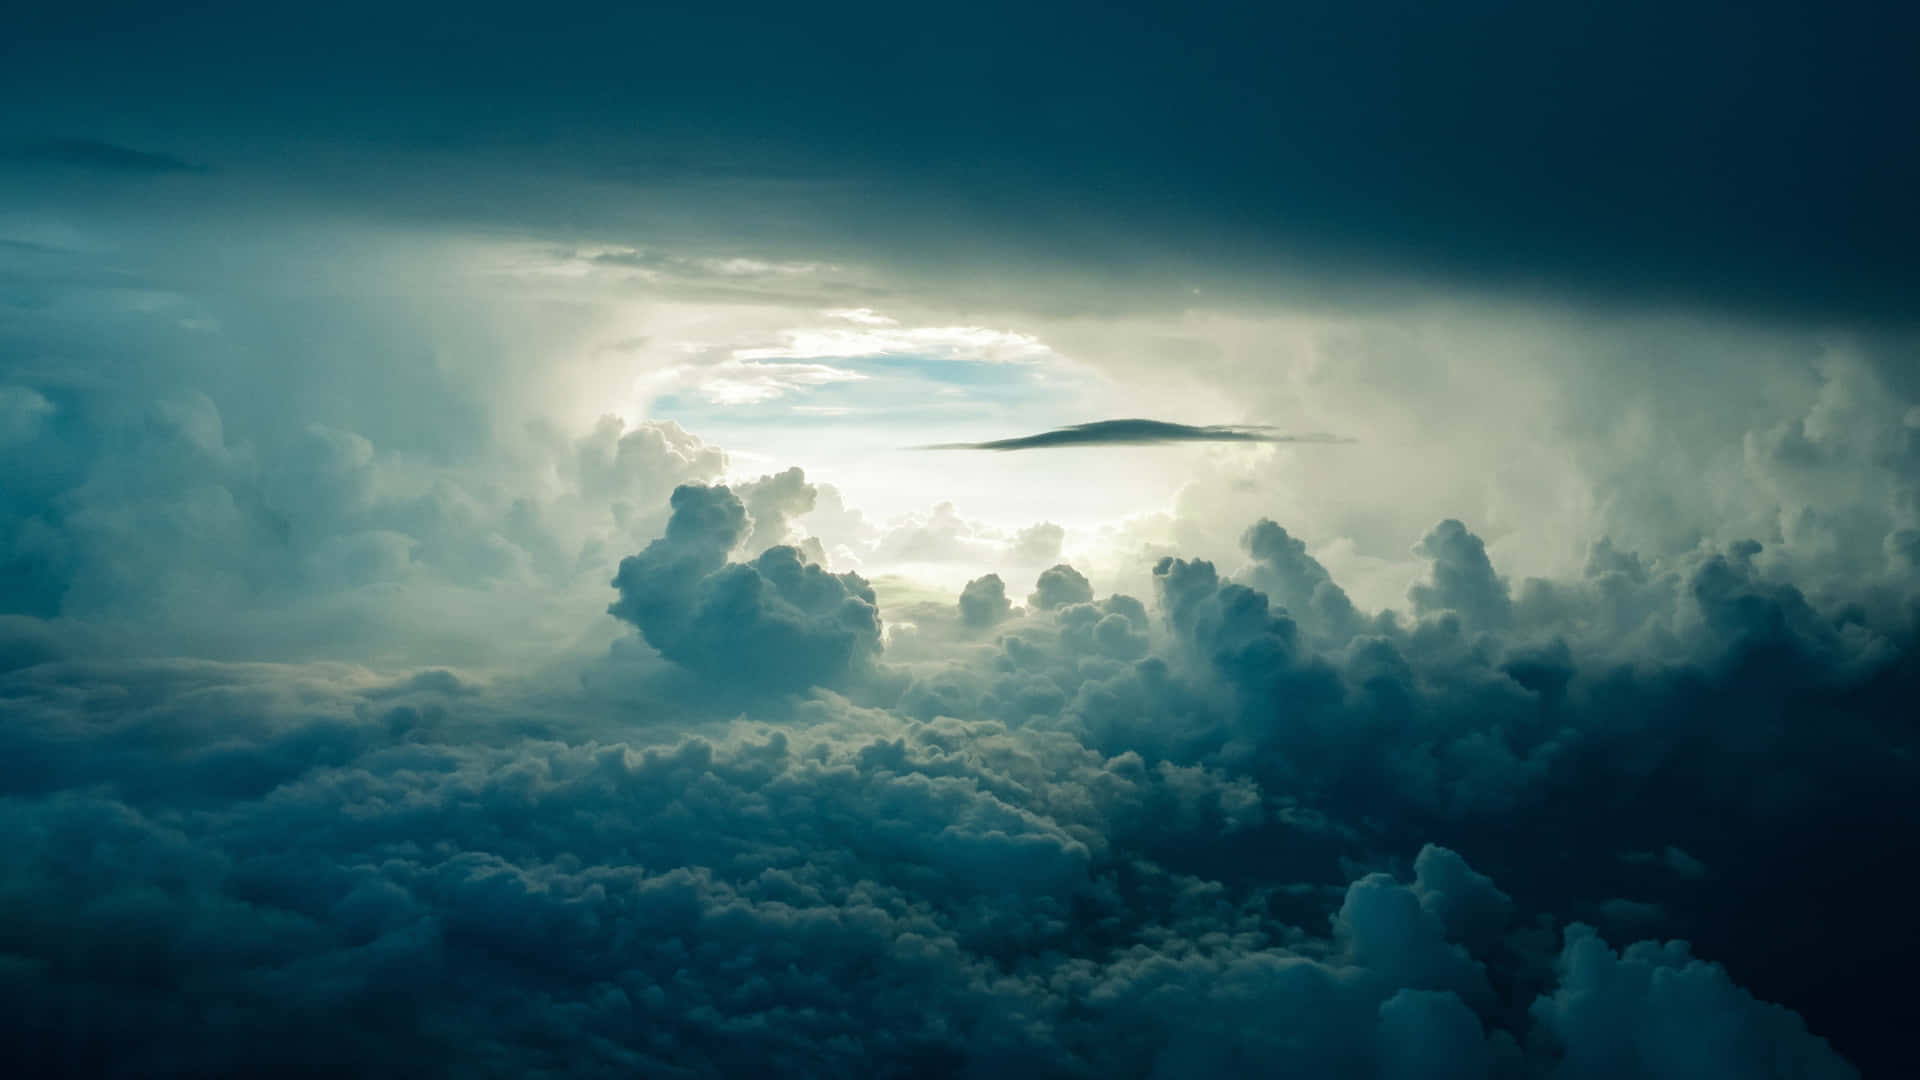 Disfrutade La Cautivadora Vista De Un Atardecer Soñador Con Nubes Cerca De Una Cadena Montañosa. Fondo de pantalla